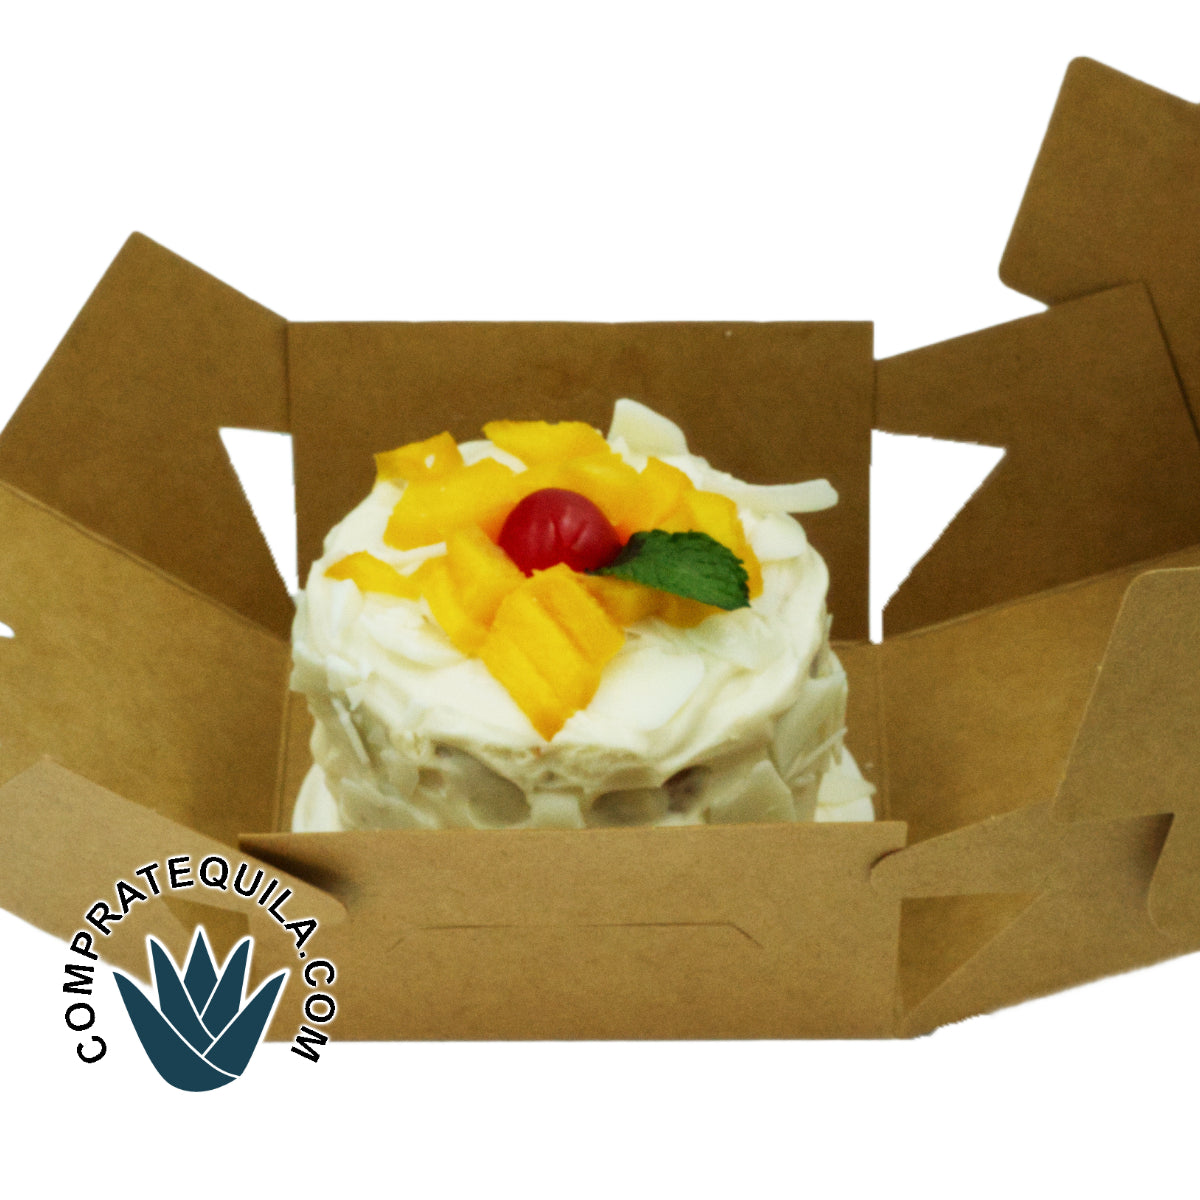 Exclusivo Pastel de Tres Leches con Toque de Baileys: Una Delicia para Compartir en Cualquier Celebración